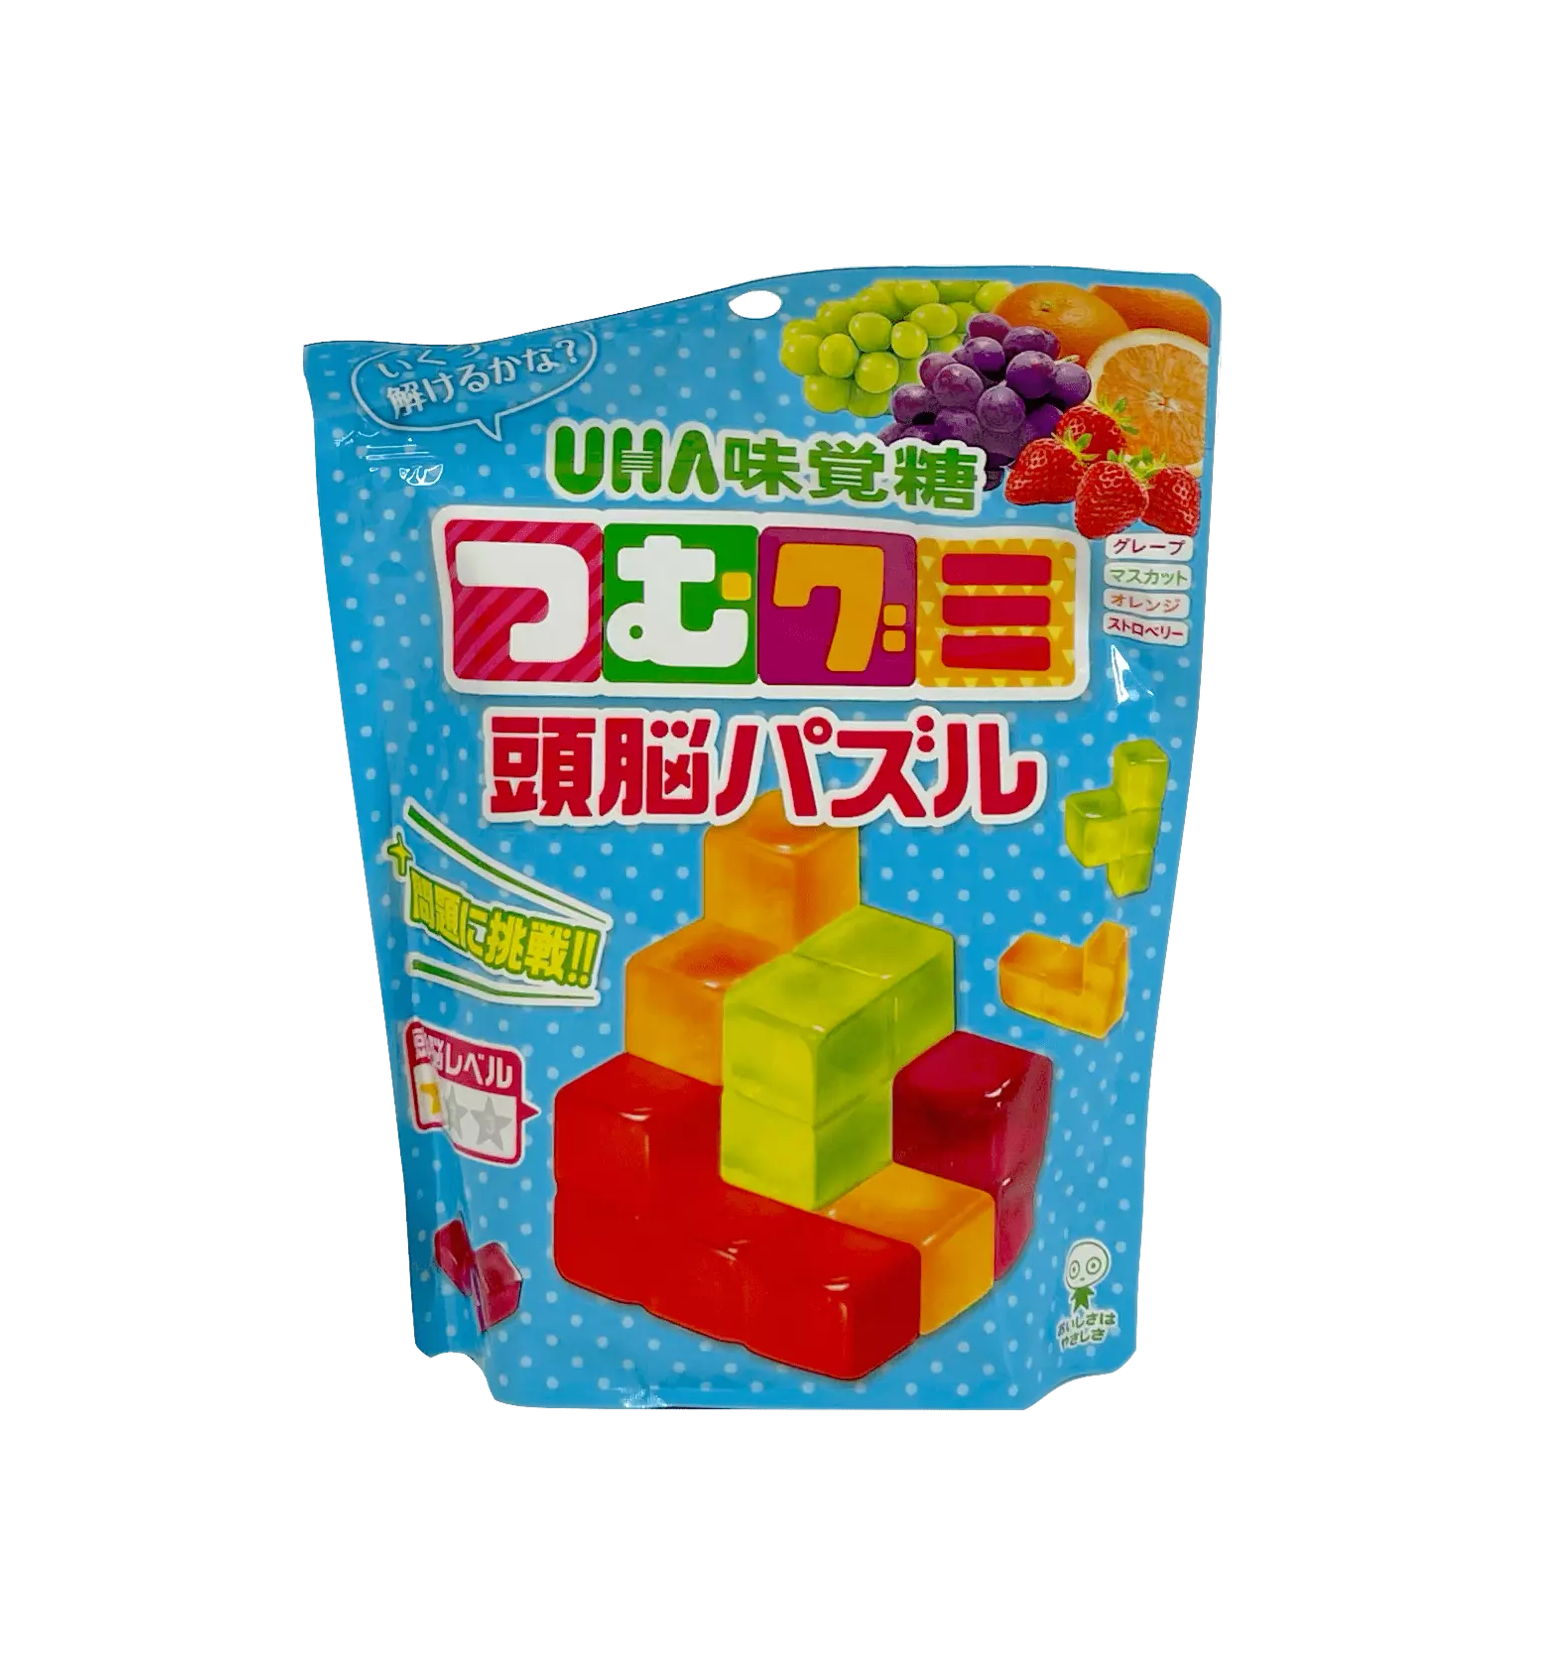 俄罗斯方块 混合水果味软糖 194g 日本